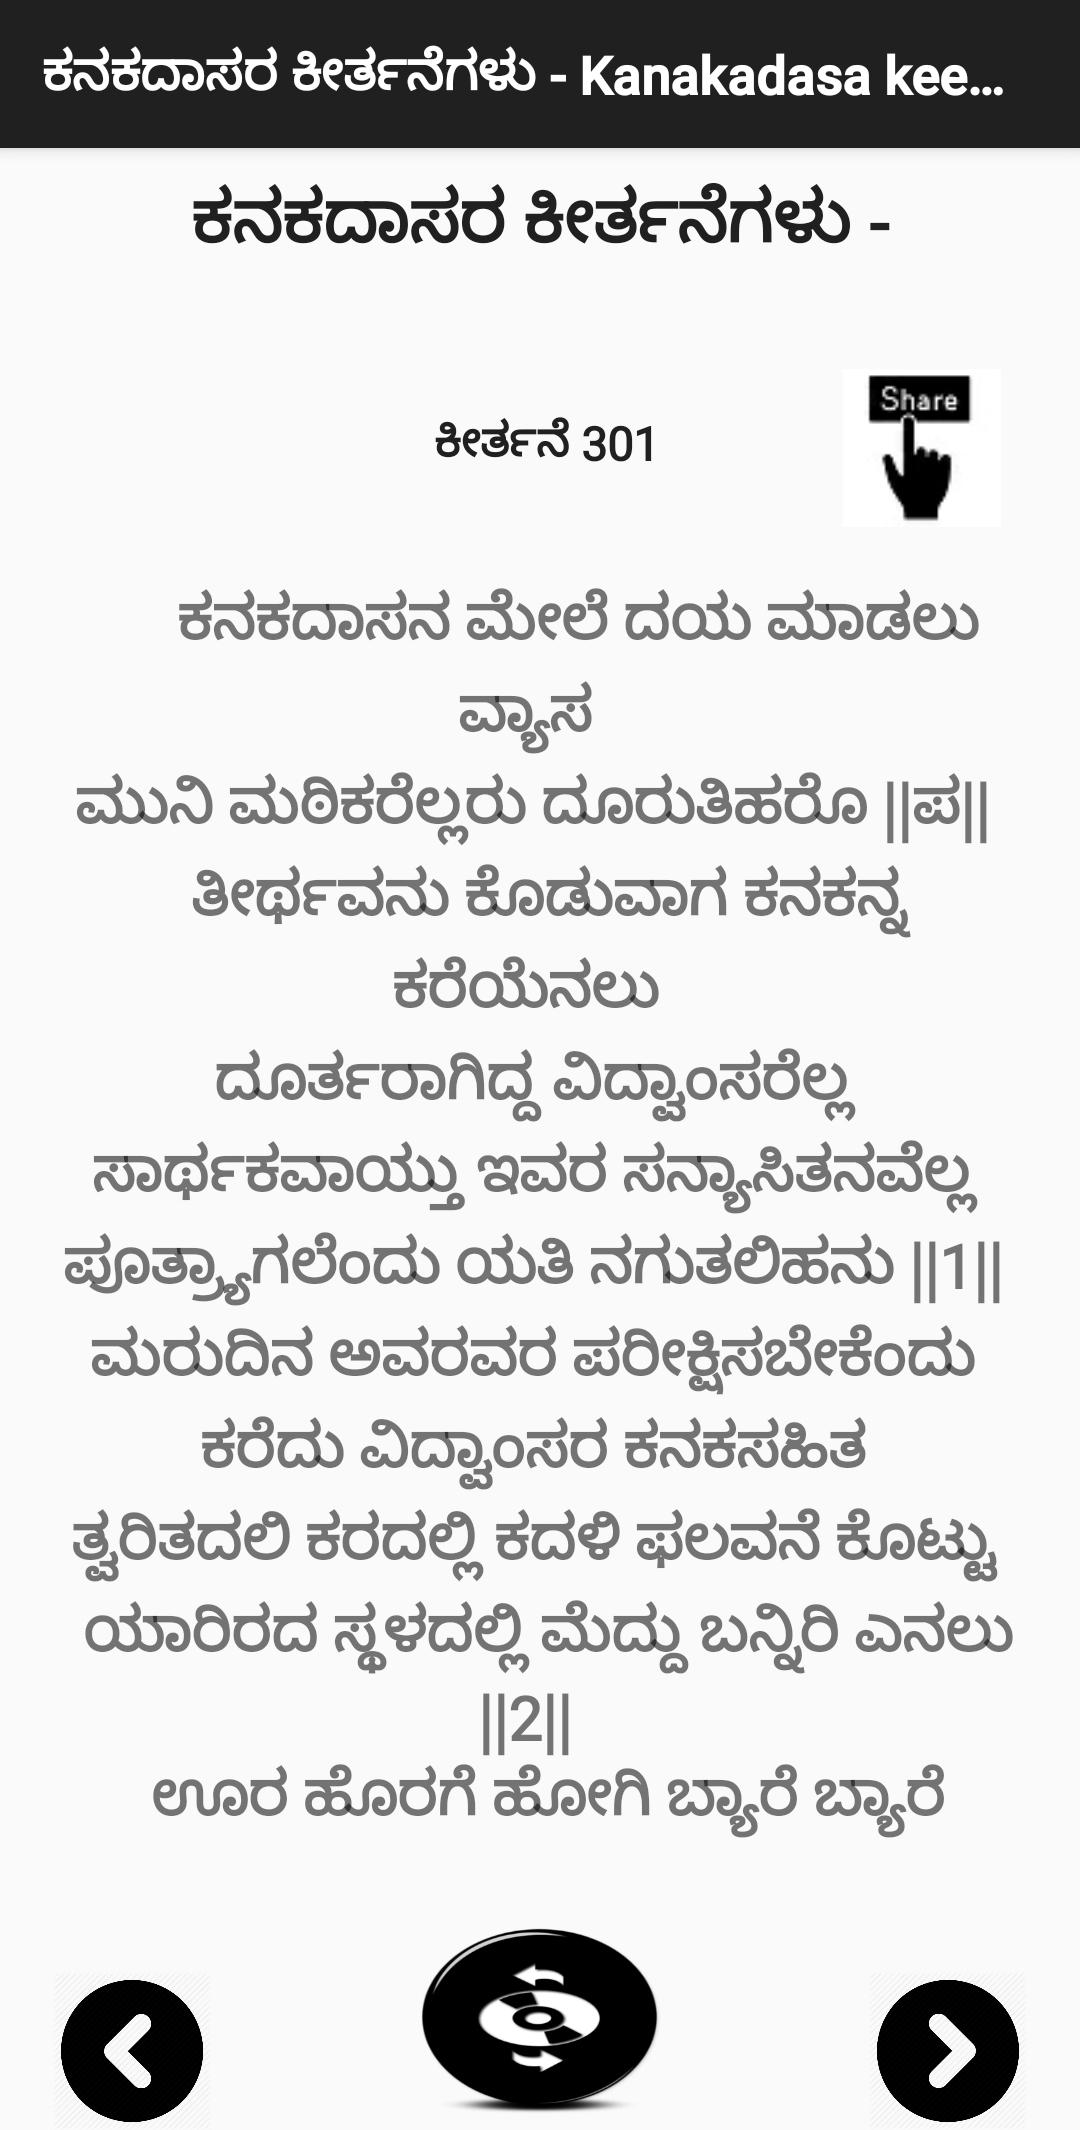 ಕನಕದಾಸರ ಕೀರ್ತನೆಗಳು - Kanakadasa Keerthane songs 3.0 Screenshot 5